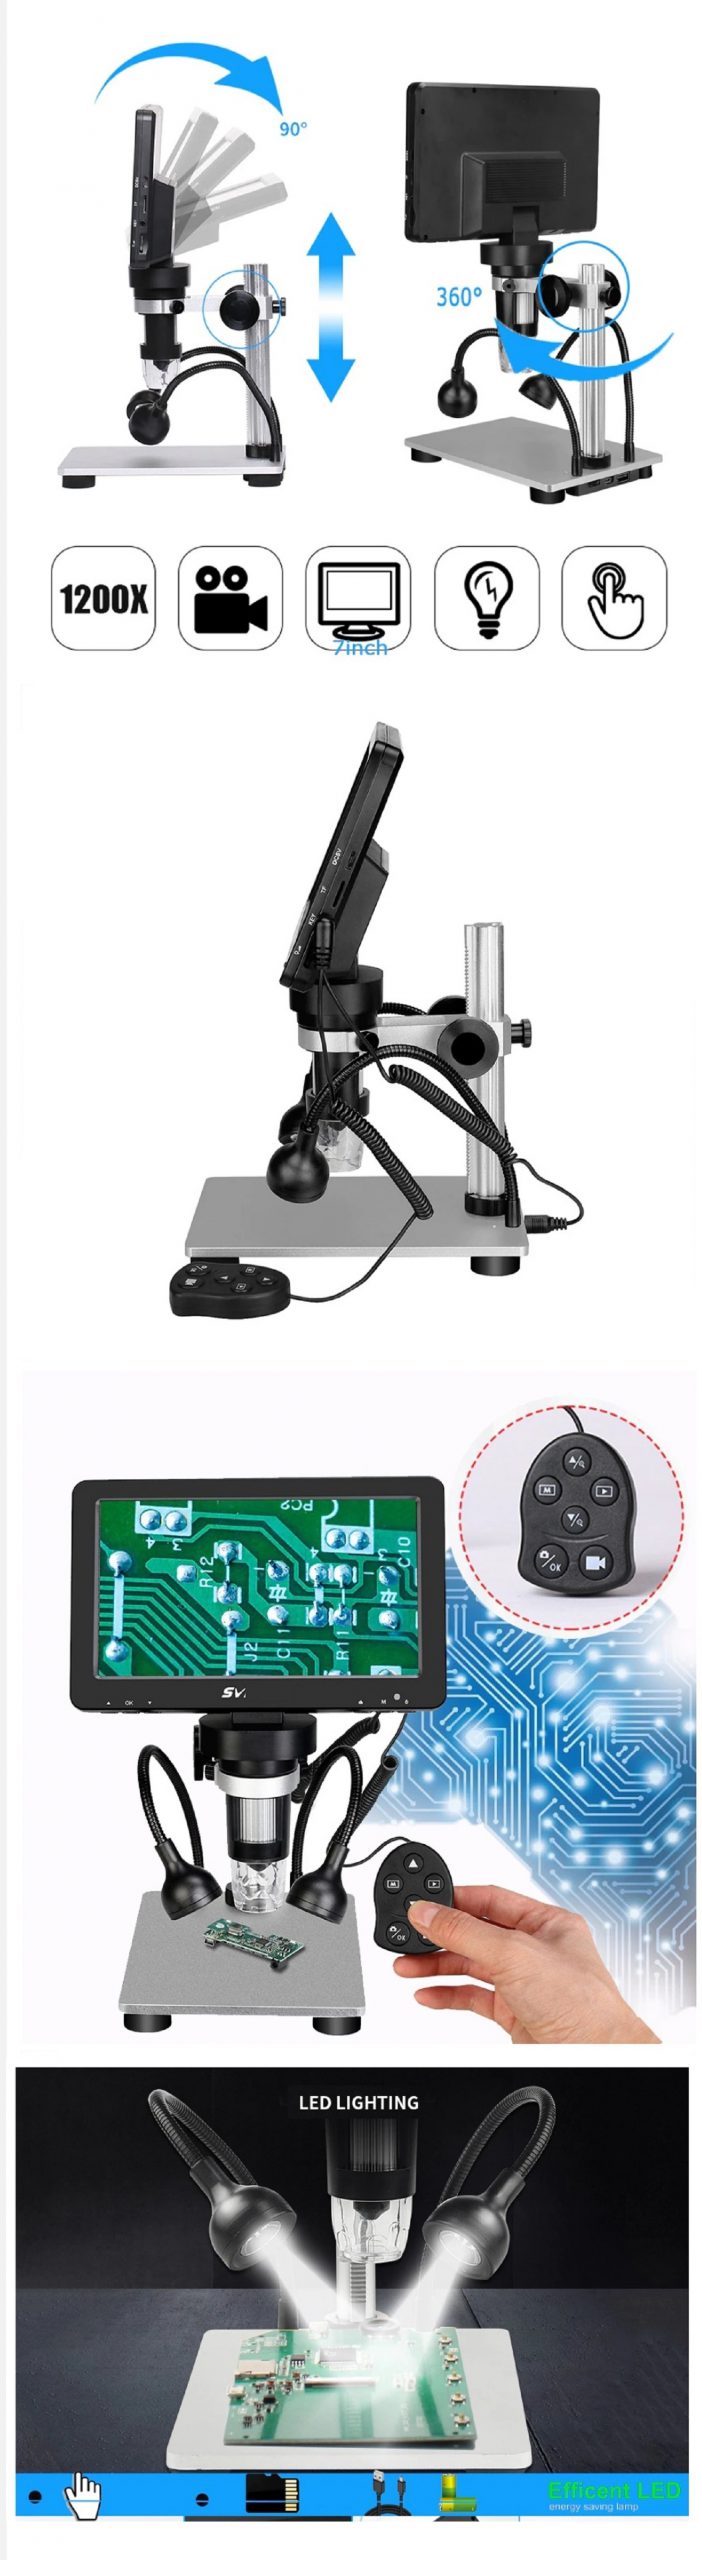 میکروسکوپ و لوپ دیجیتال مدل SV604